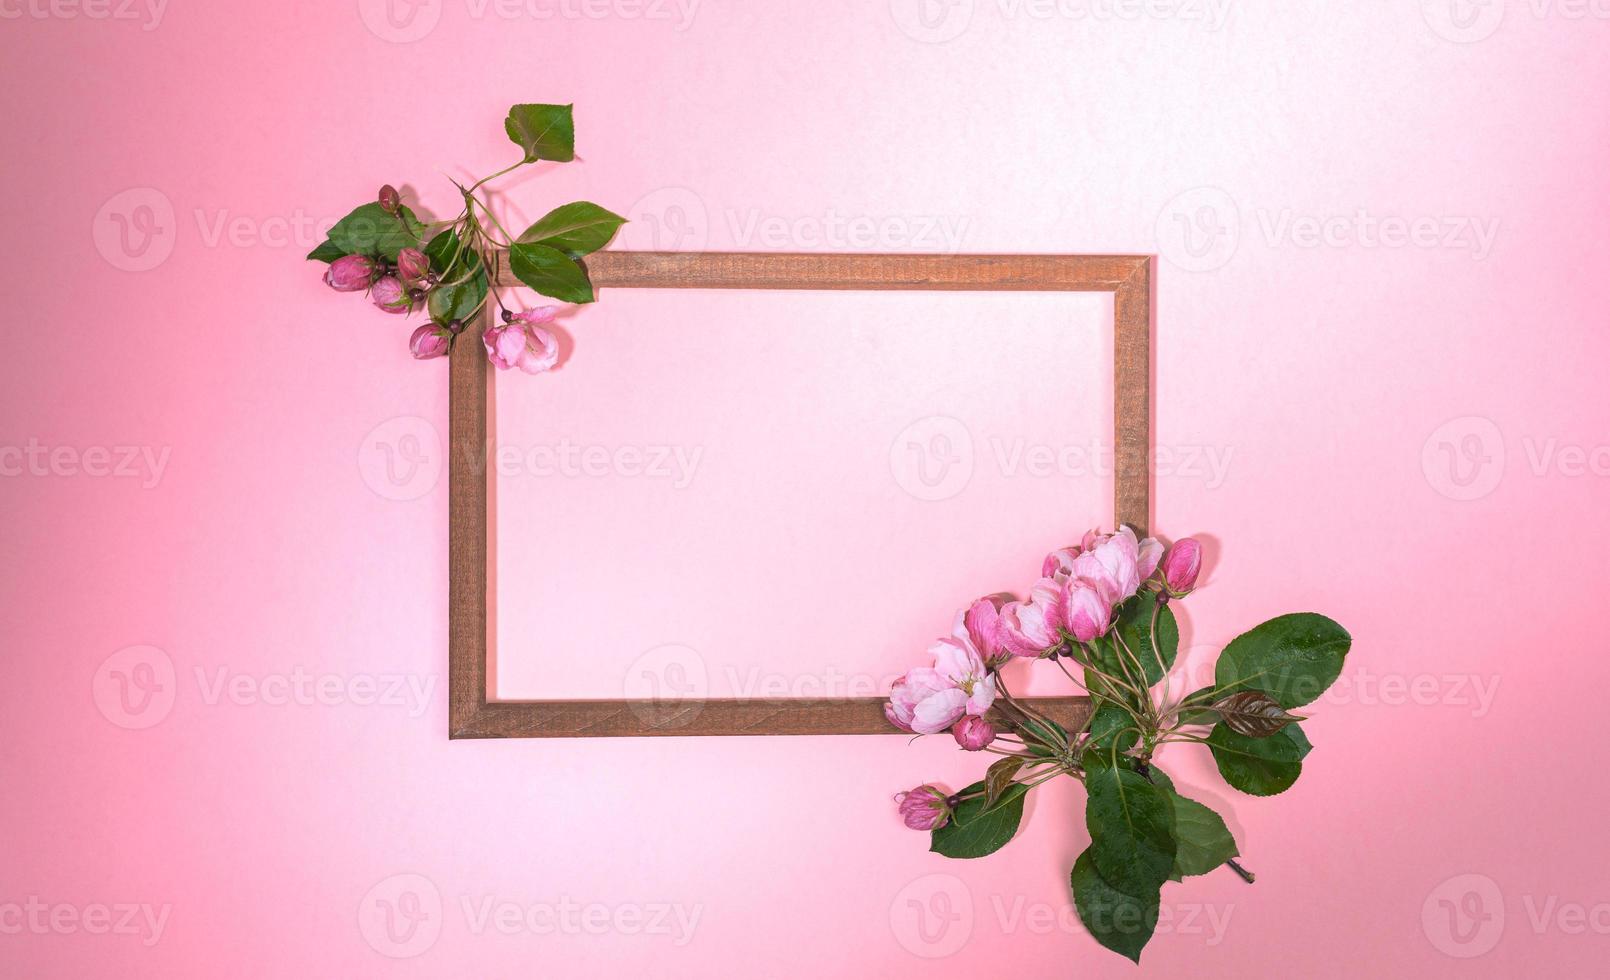 moldura de madeira de vista superior com galhos frescos de macieira rosa florescendo ou cereja no pano de fundo gradiente rosa com espaço de cópia. foto